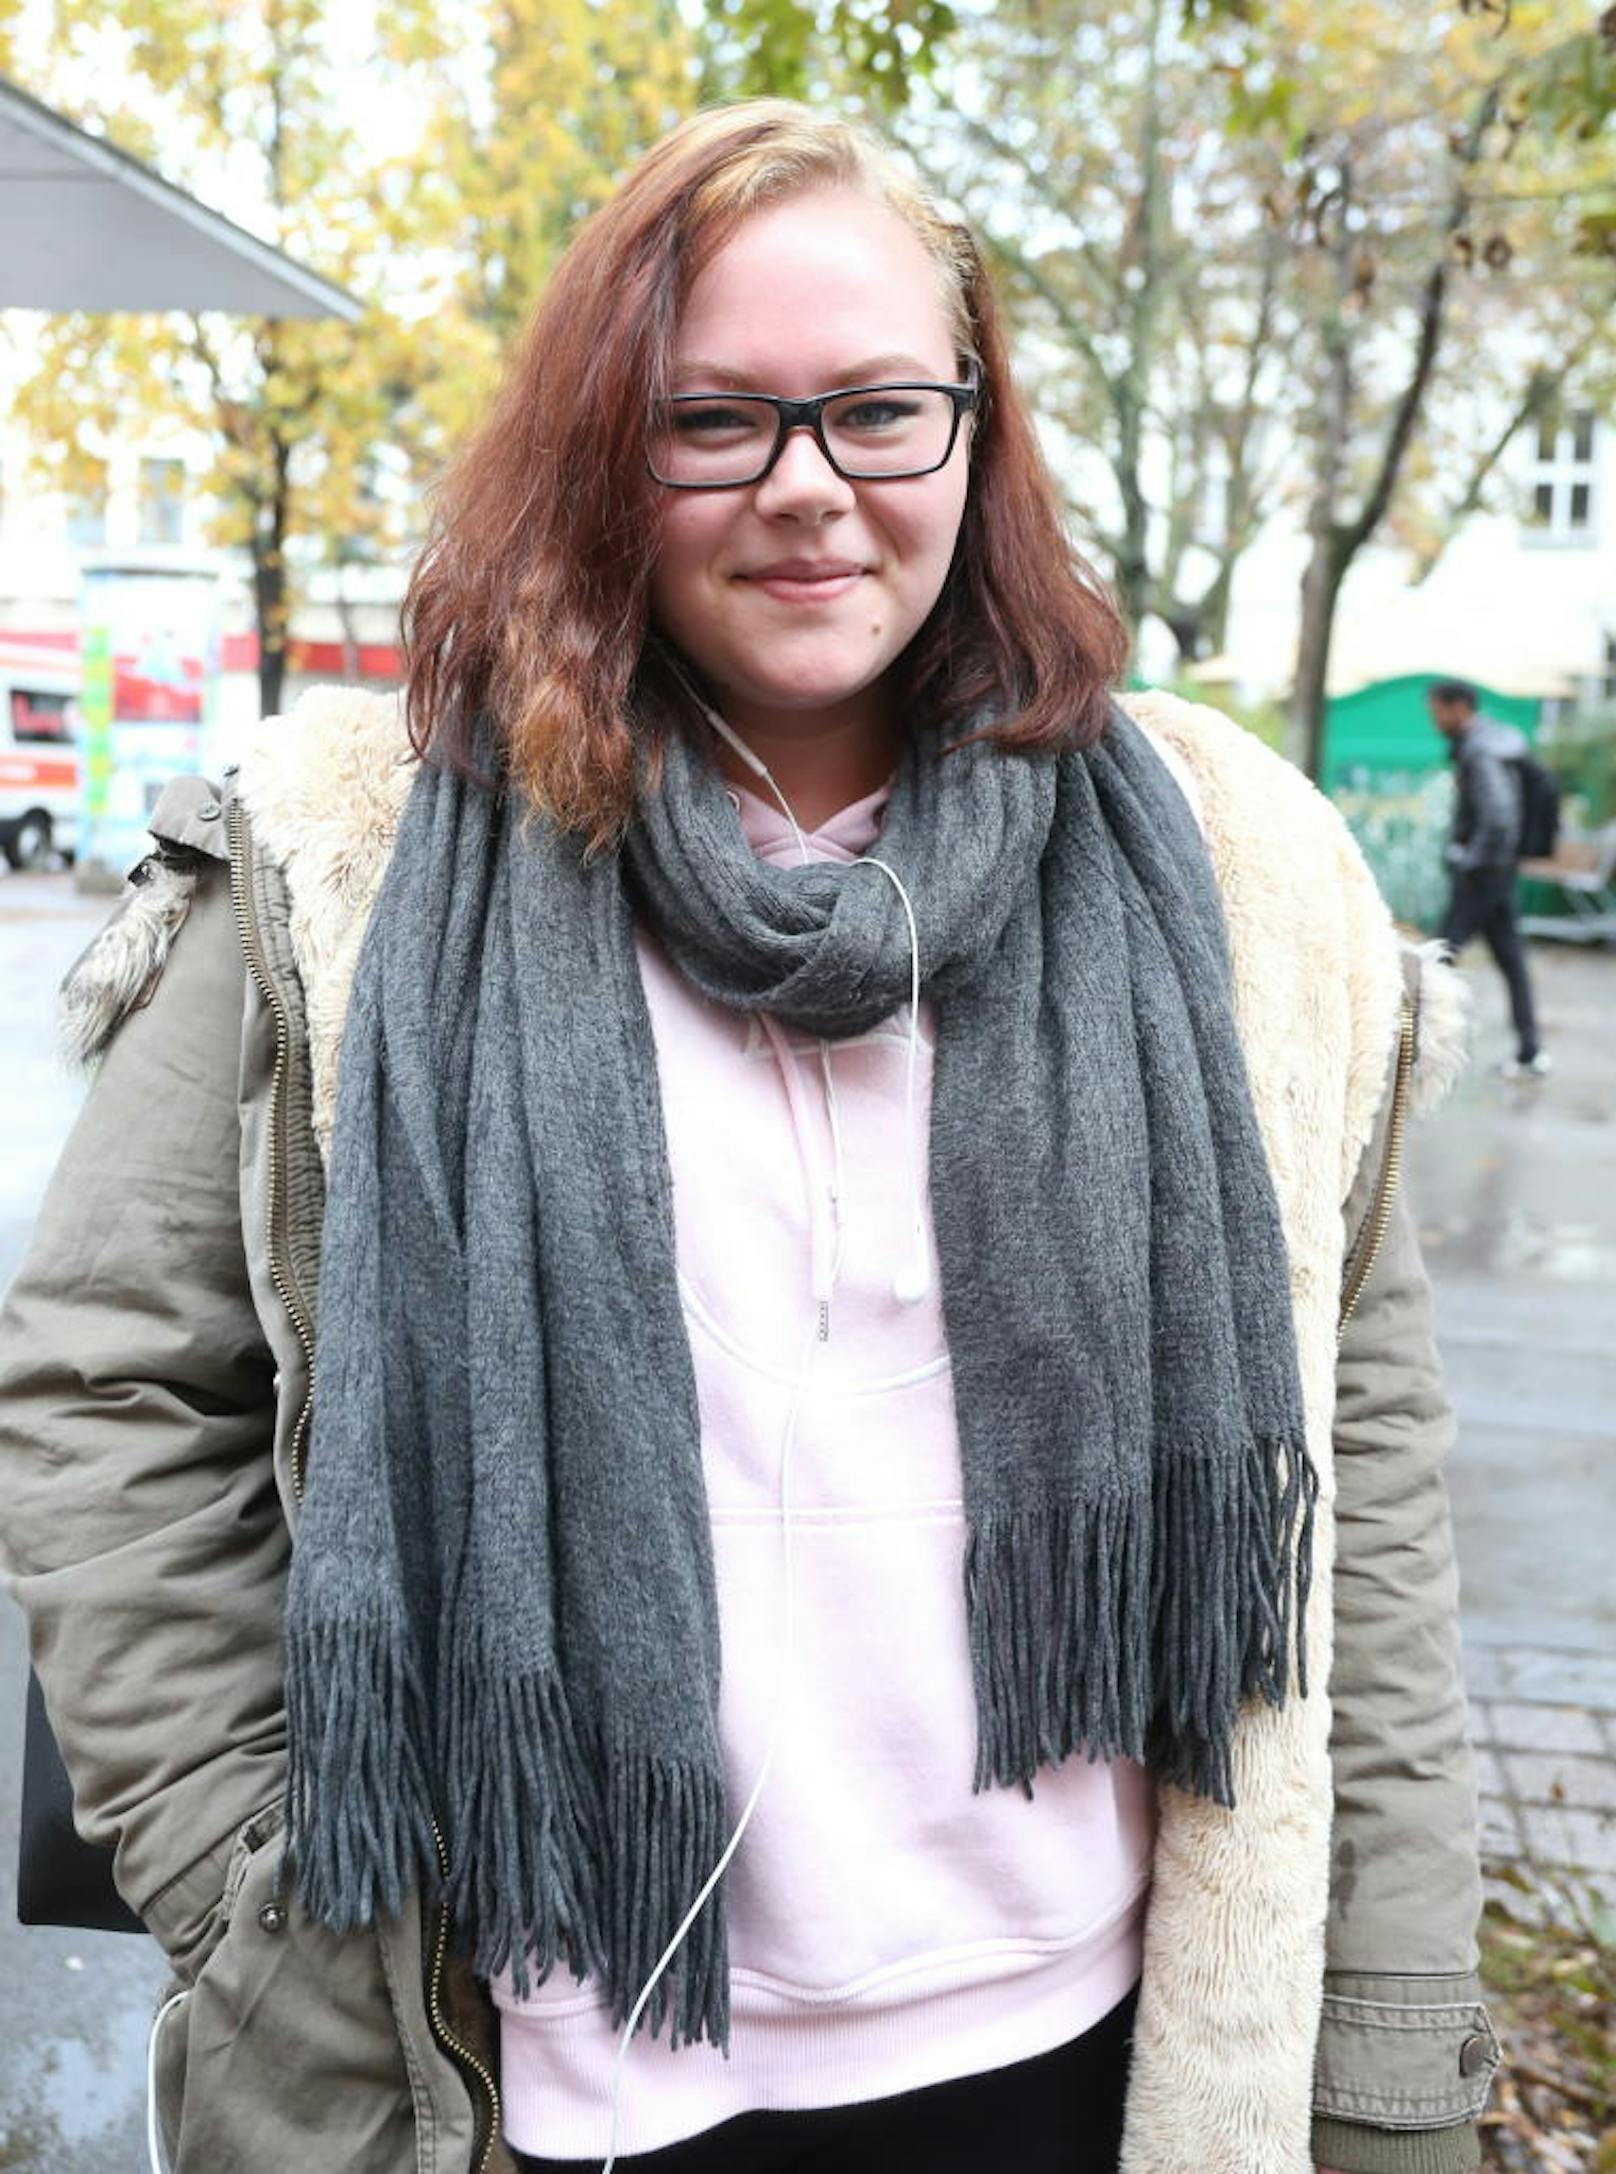 Kindergärtnerin Theresa (20): "Manspreading ist mir schon aufgefallen. Das stört mich sehr, wenn ich mit der U-Bahn fahre."